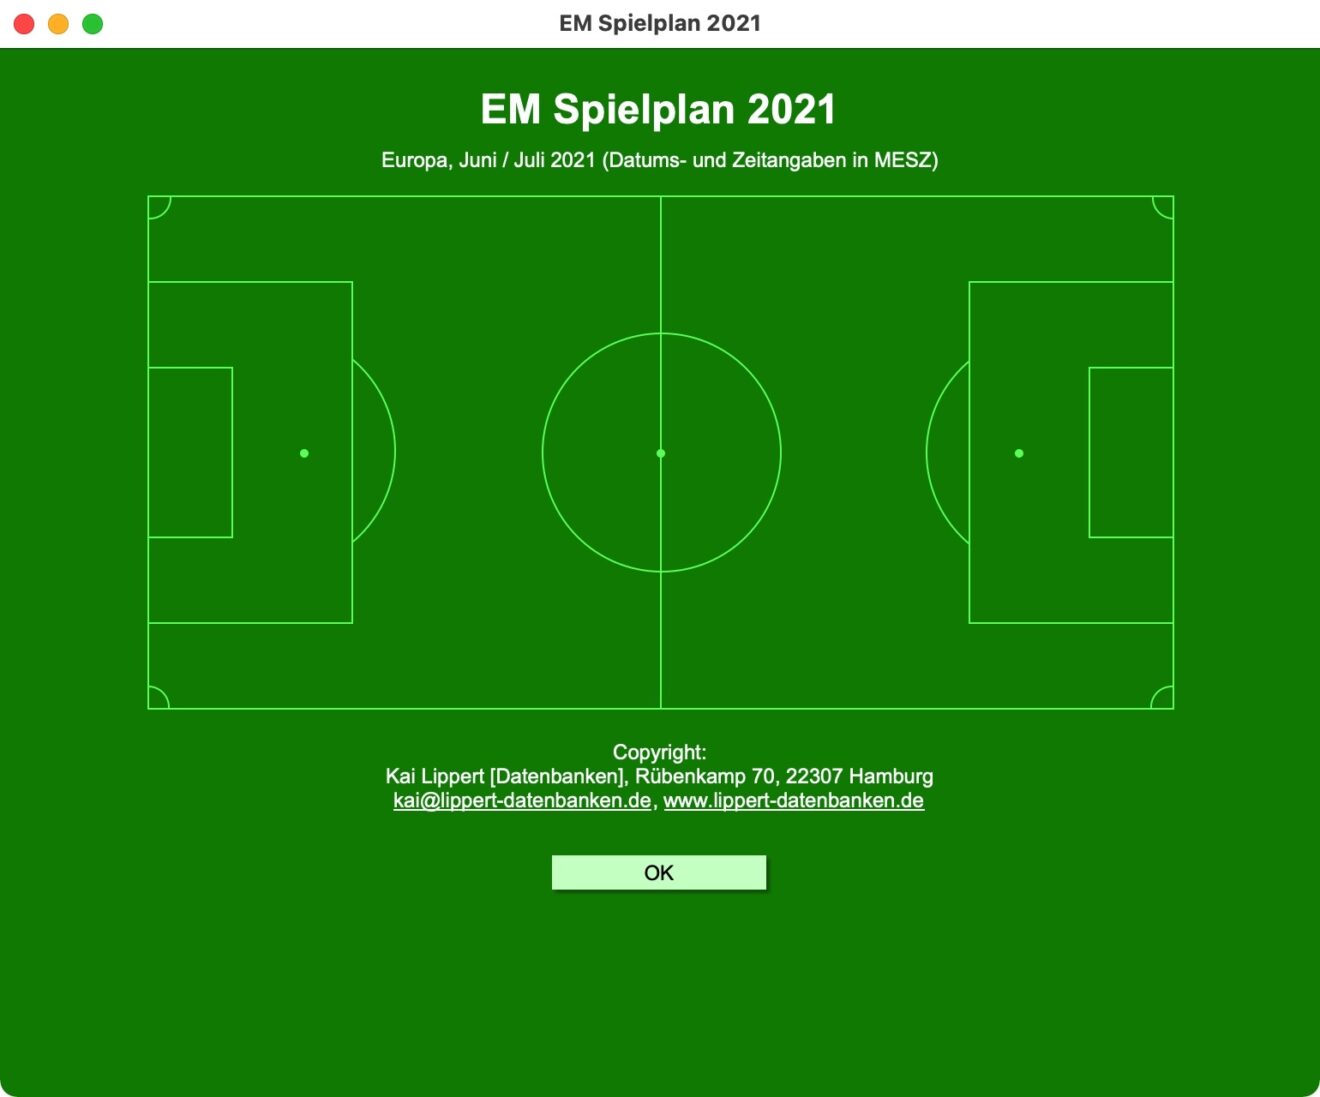 EURO Spielplan 2021 als FileMaker Datenbank